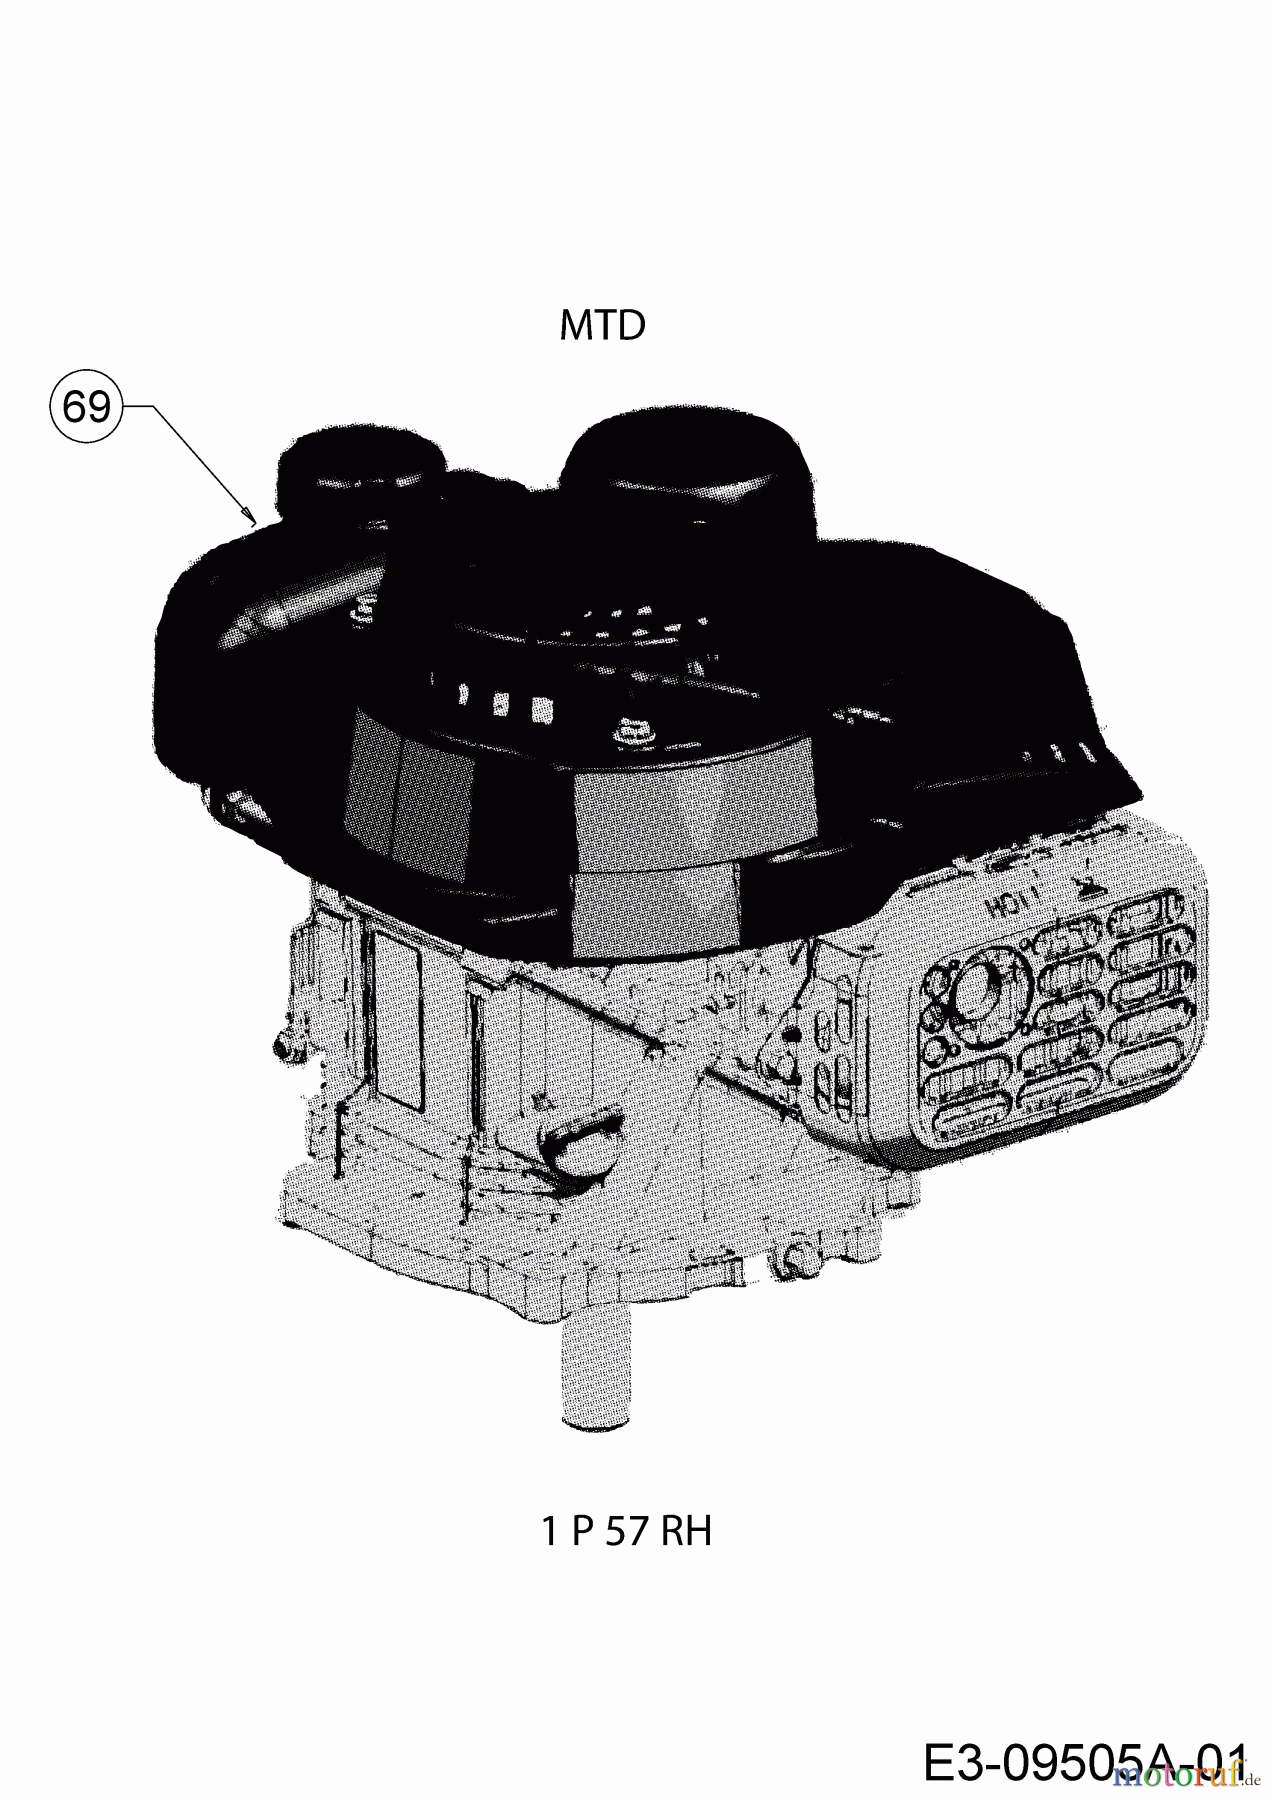  MTD Petrol mower self propelled SP 46 T 12E-TASJ600  (2020) Engine MTD